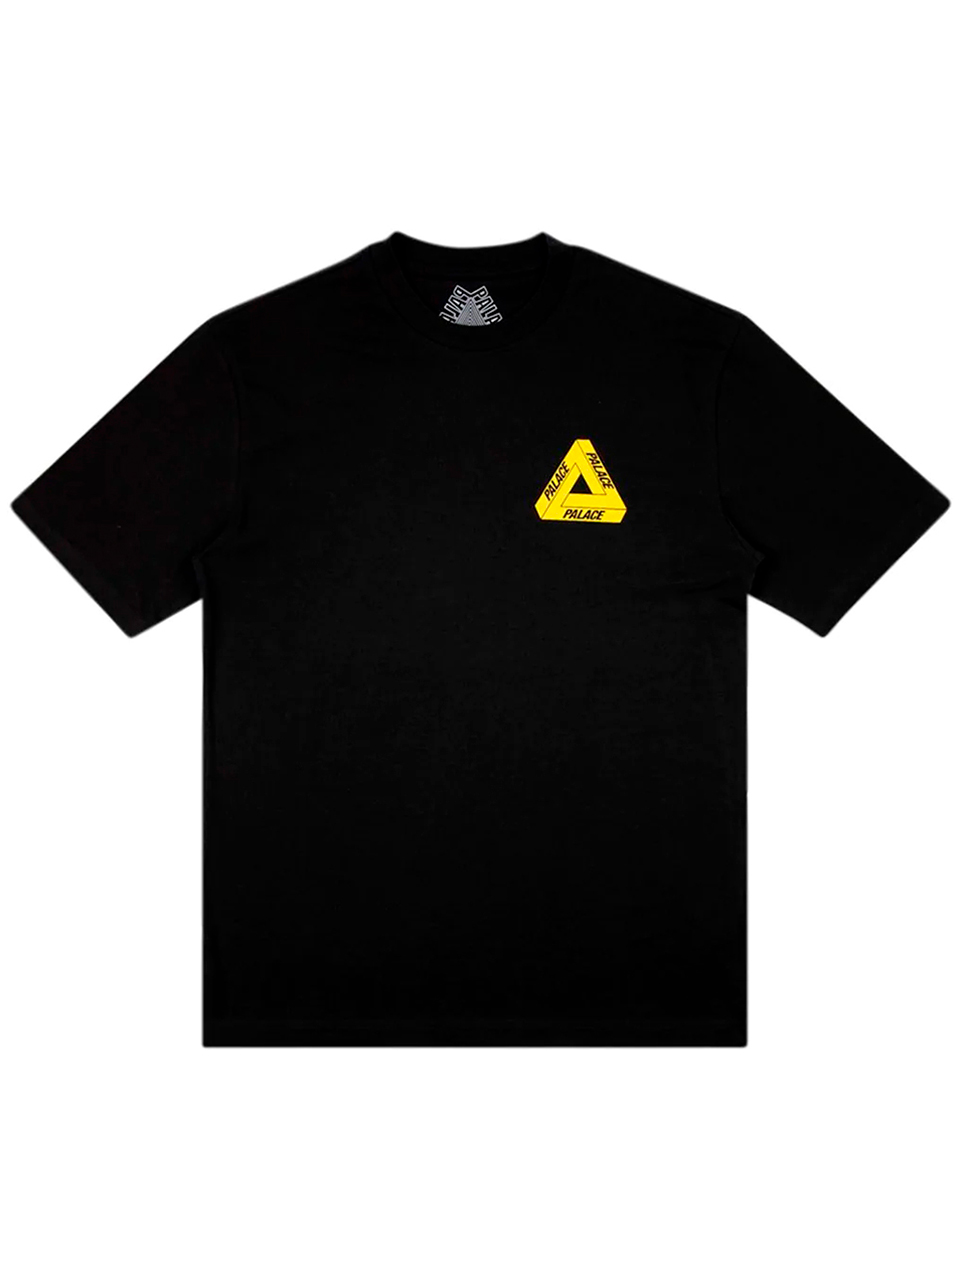 Imagem de: Camiseta Palace Preta Tri-To-Help Logo Amarelo